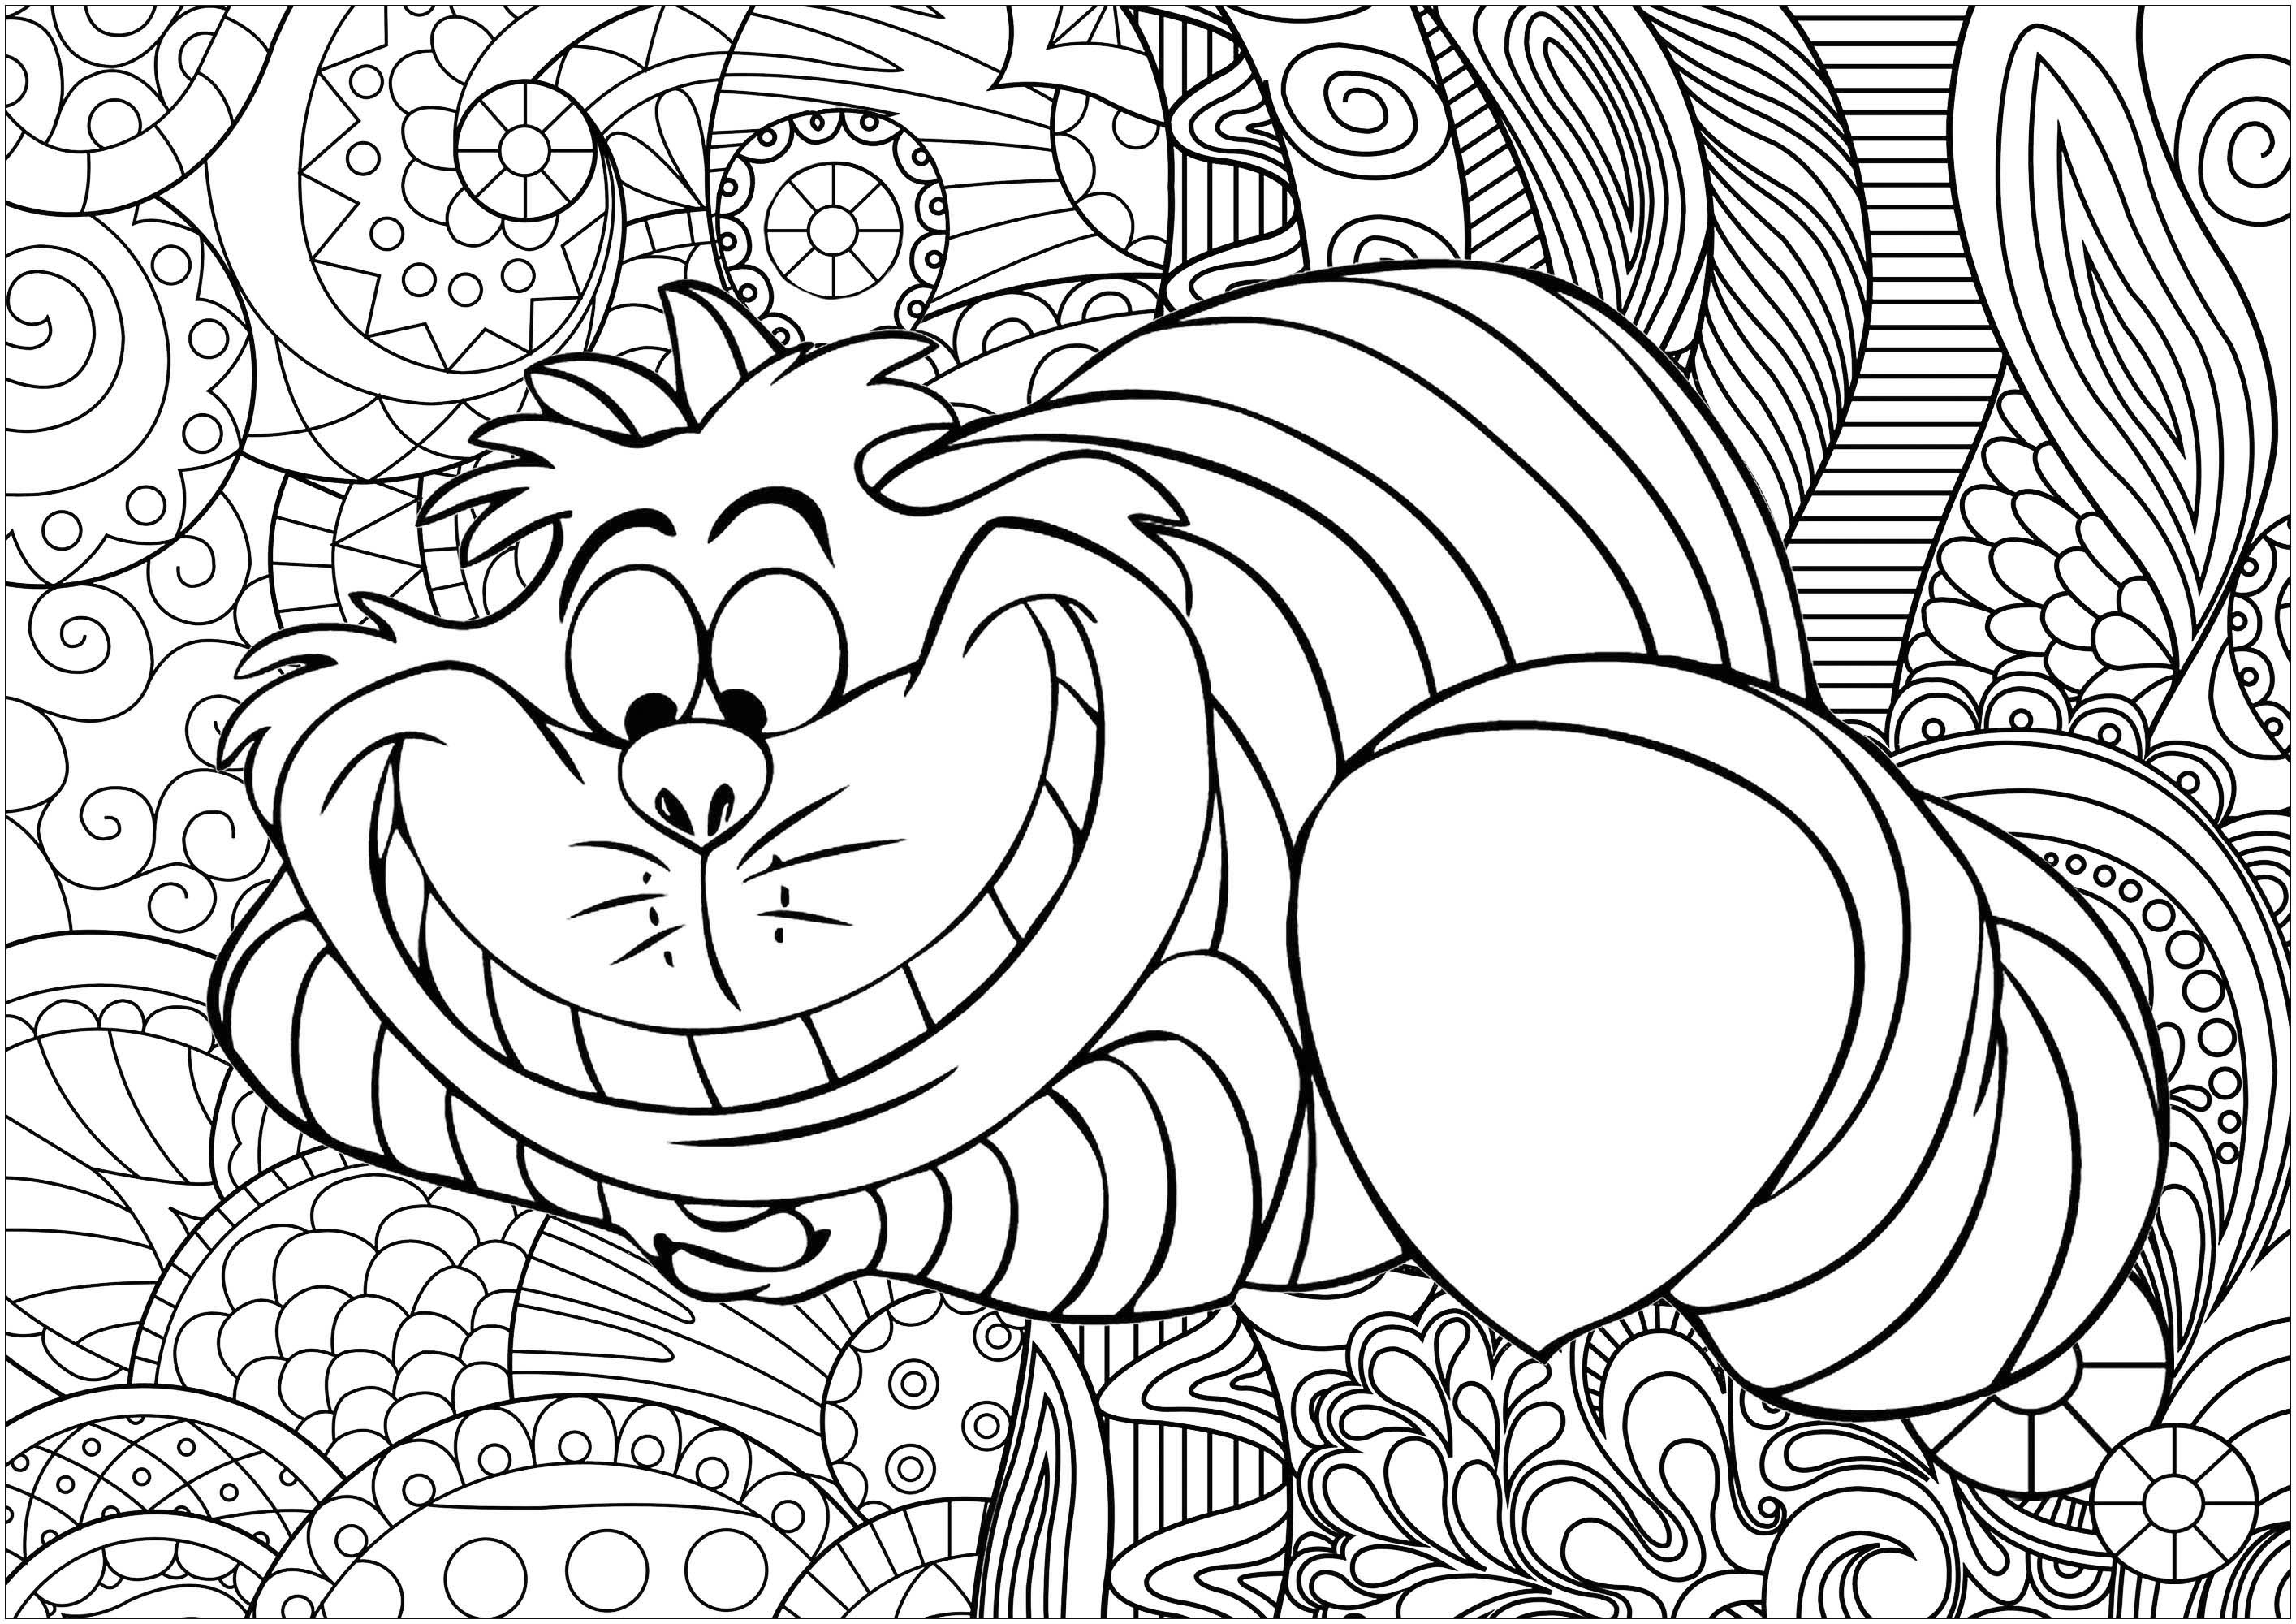 Colorea al famoso gato de Cheshire de Las aventuras de Alicia en el país de las maravillas, escrito por Lewis Carroll y popularizado por la película de animación de Disney. Fondo de Caillou, Artista : Art'Isabelle